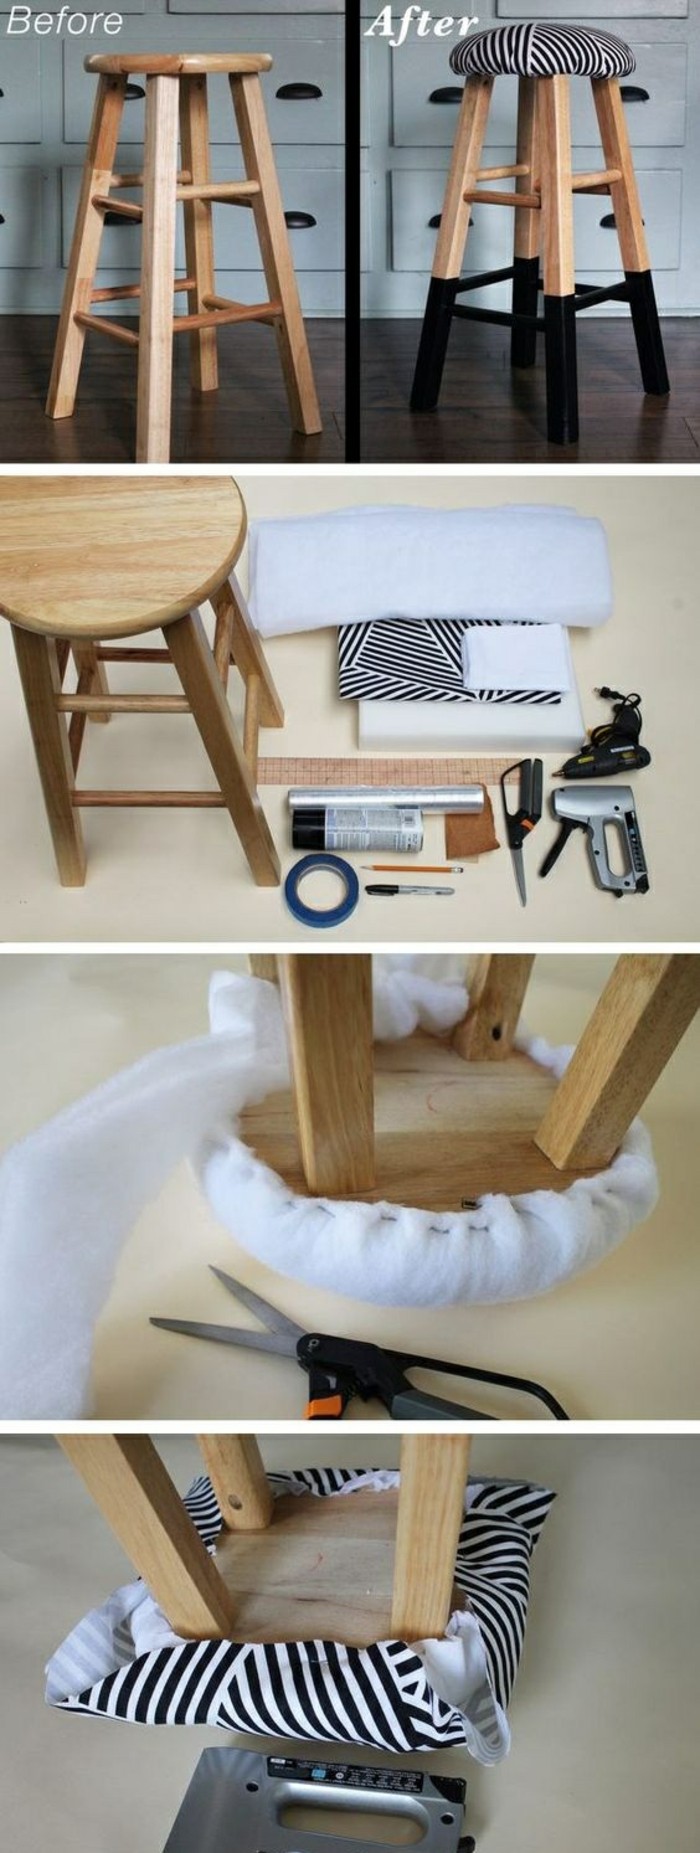 мебели възстановяващи-столче-лист и боя-Направи си сам идеи субстанция-ножици